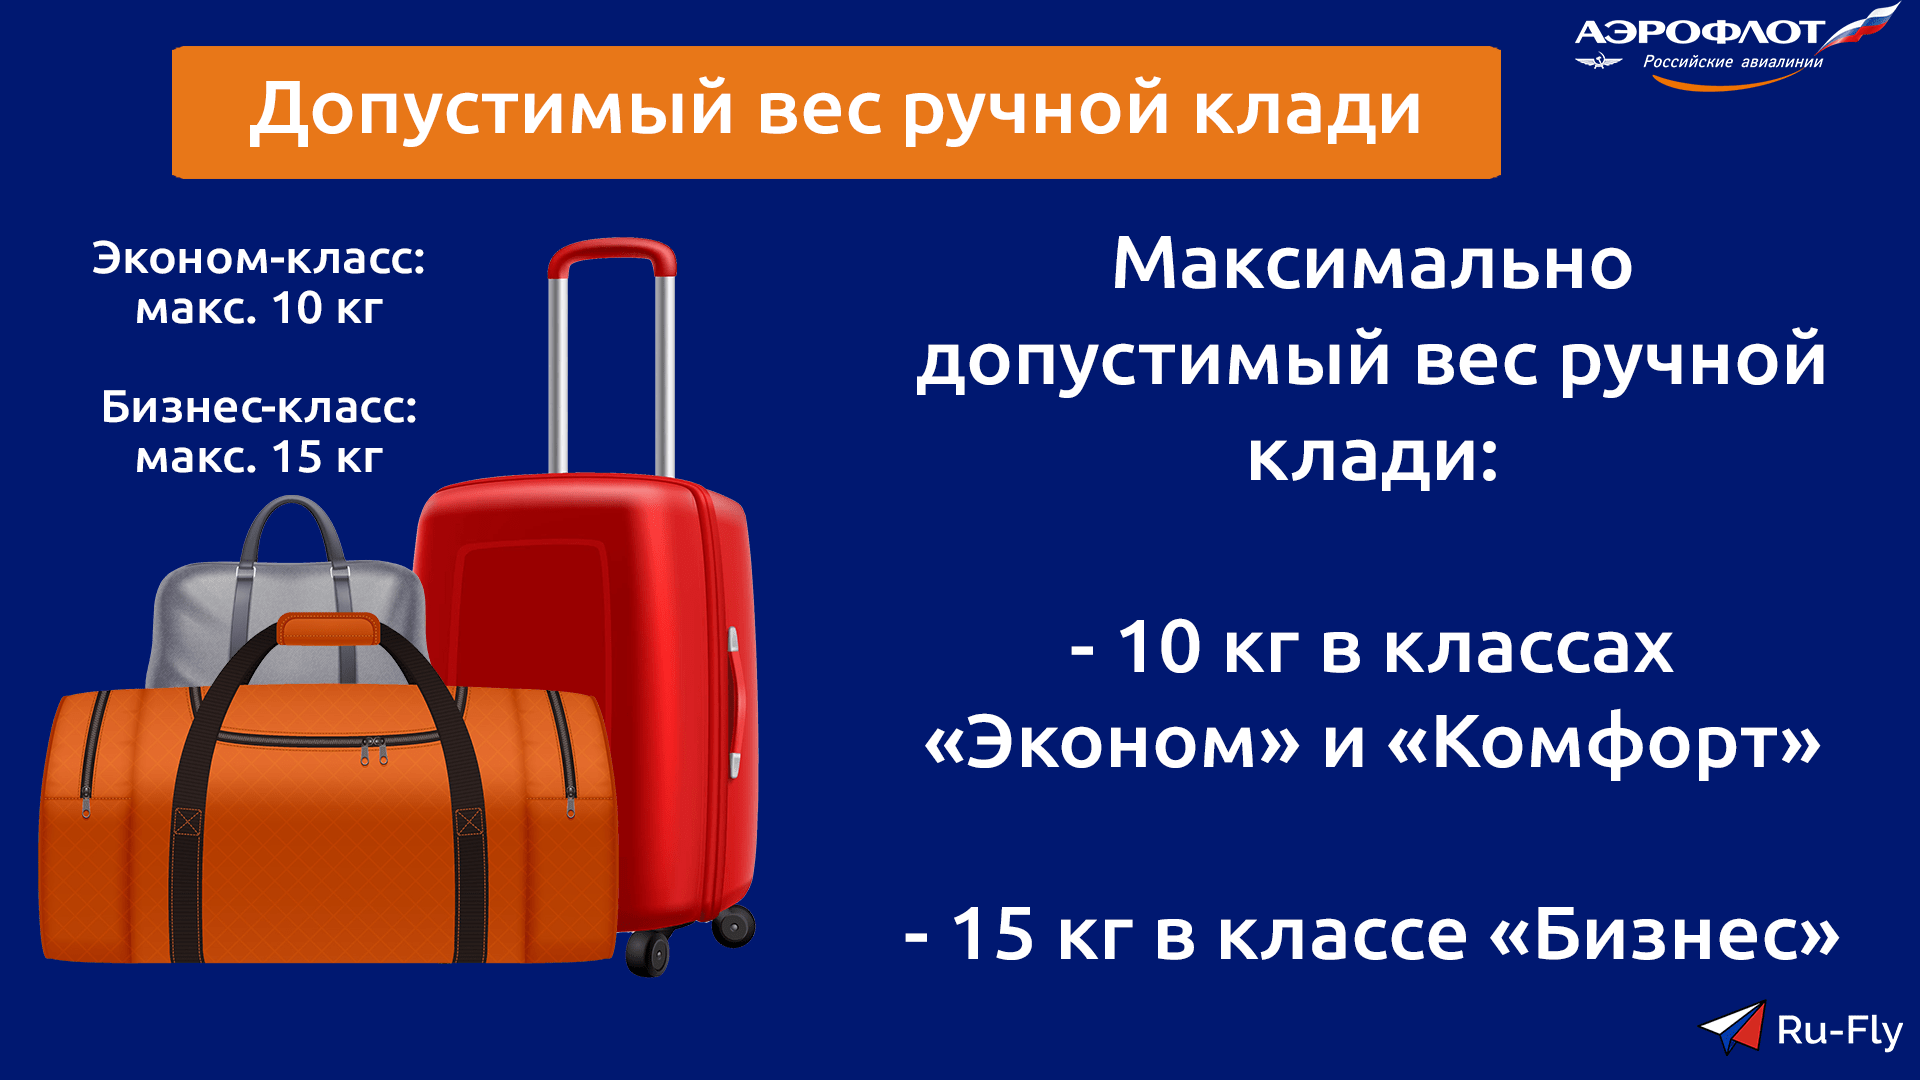 Нормы провоза багажа для рейсов с нумерацией fv5501-5999